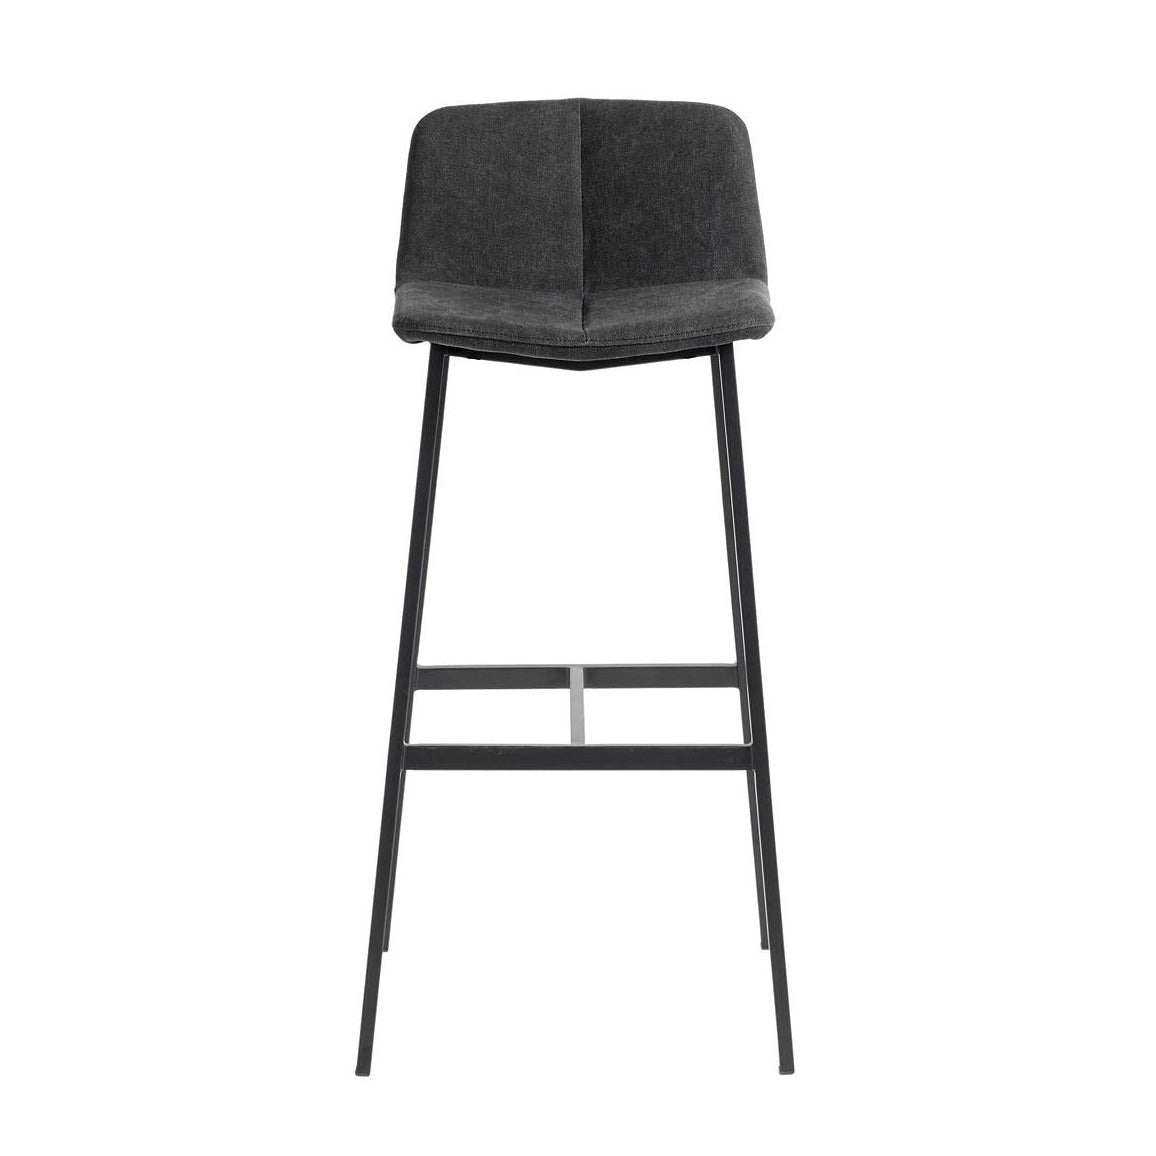 tool baaritool baaripukk taani disain antratsiit hall pukk  barstool köögisaare pukk chairs minimal diain